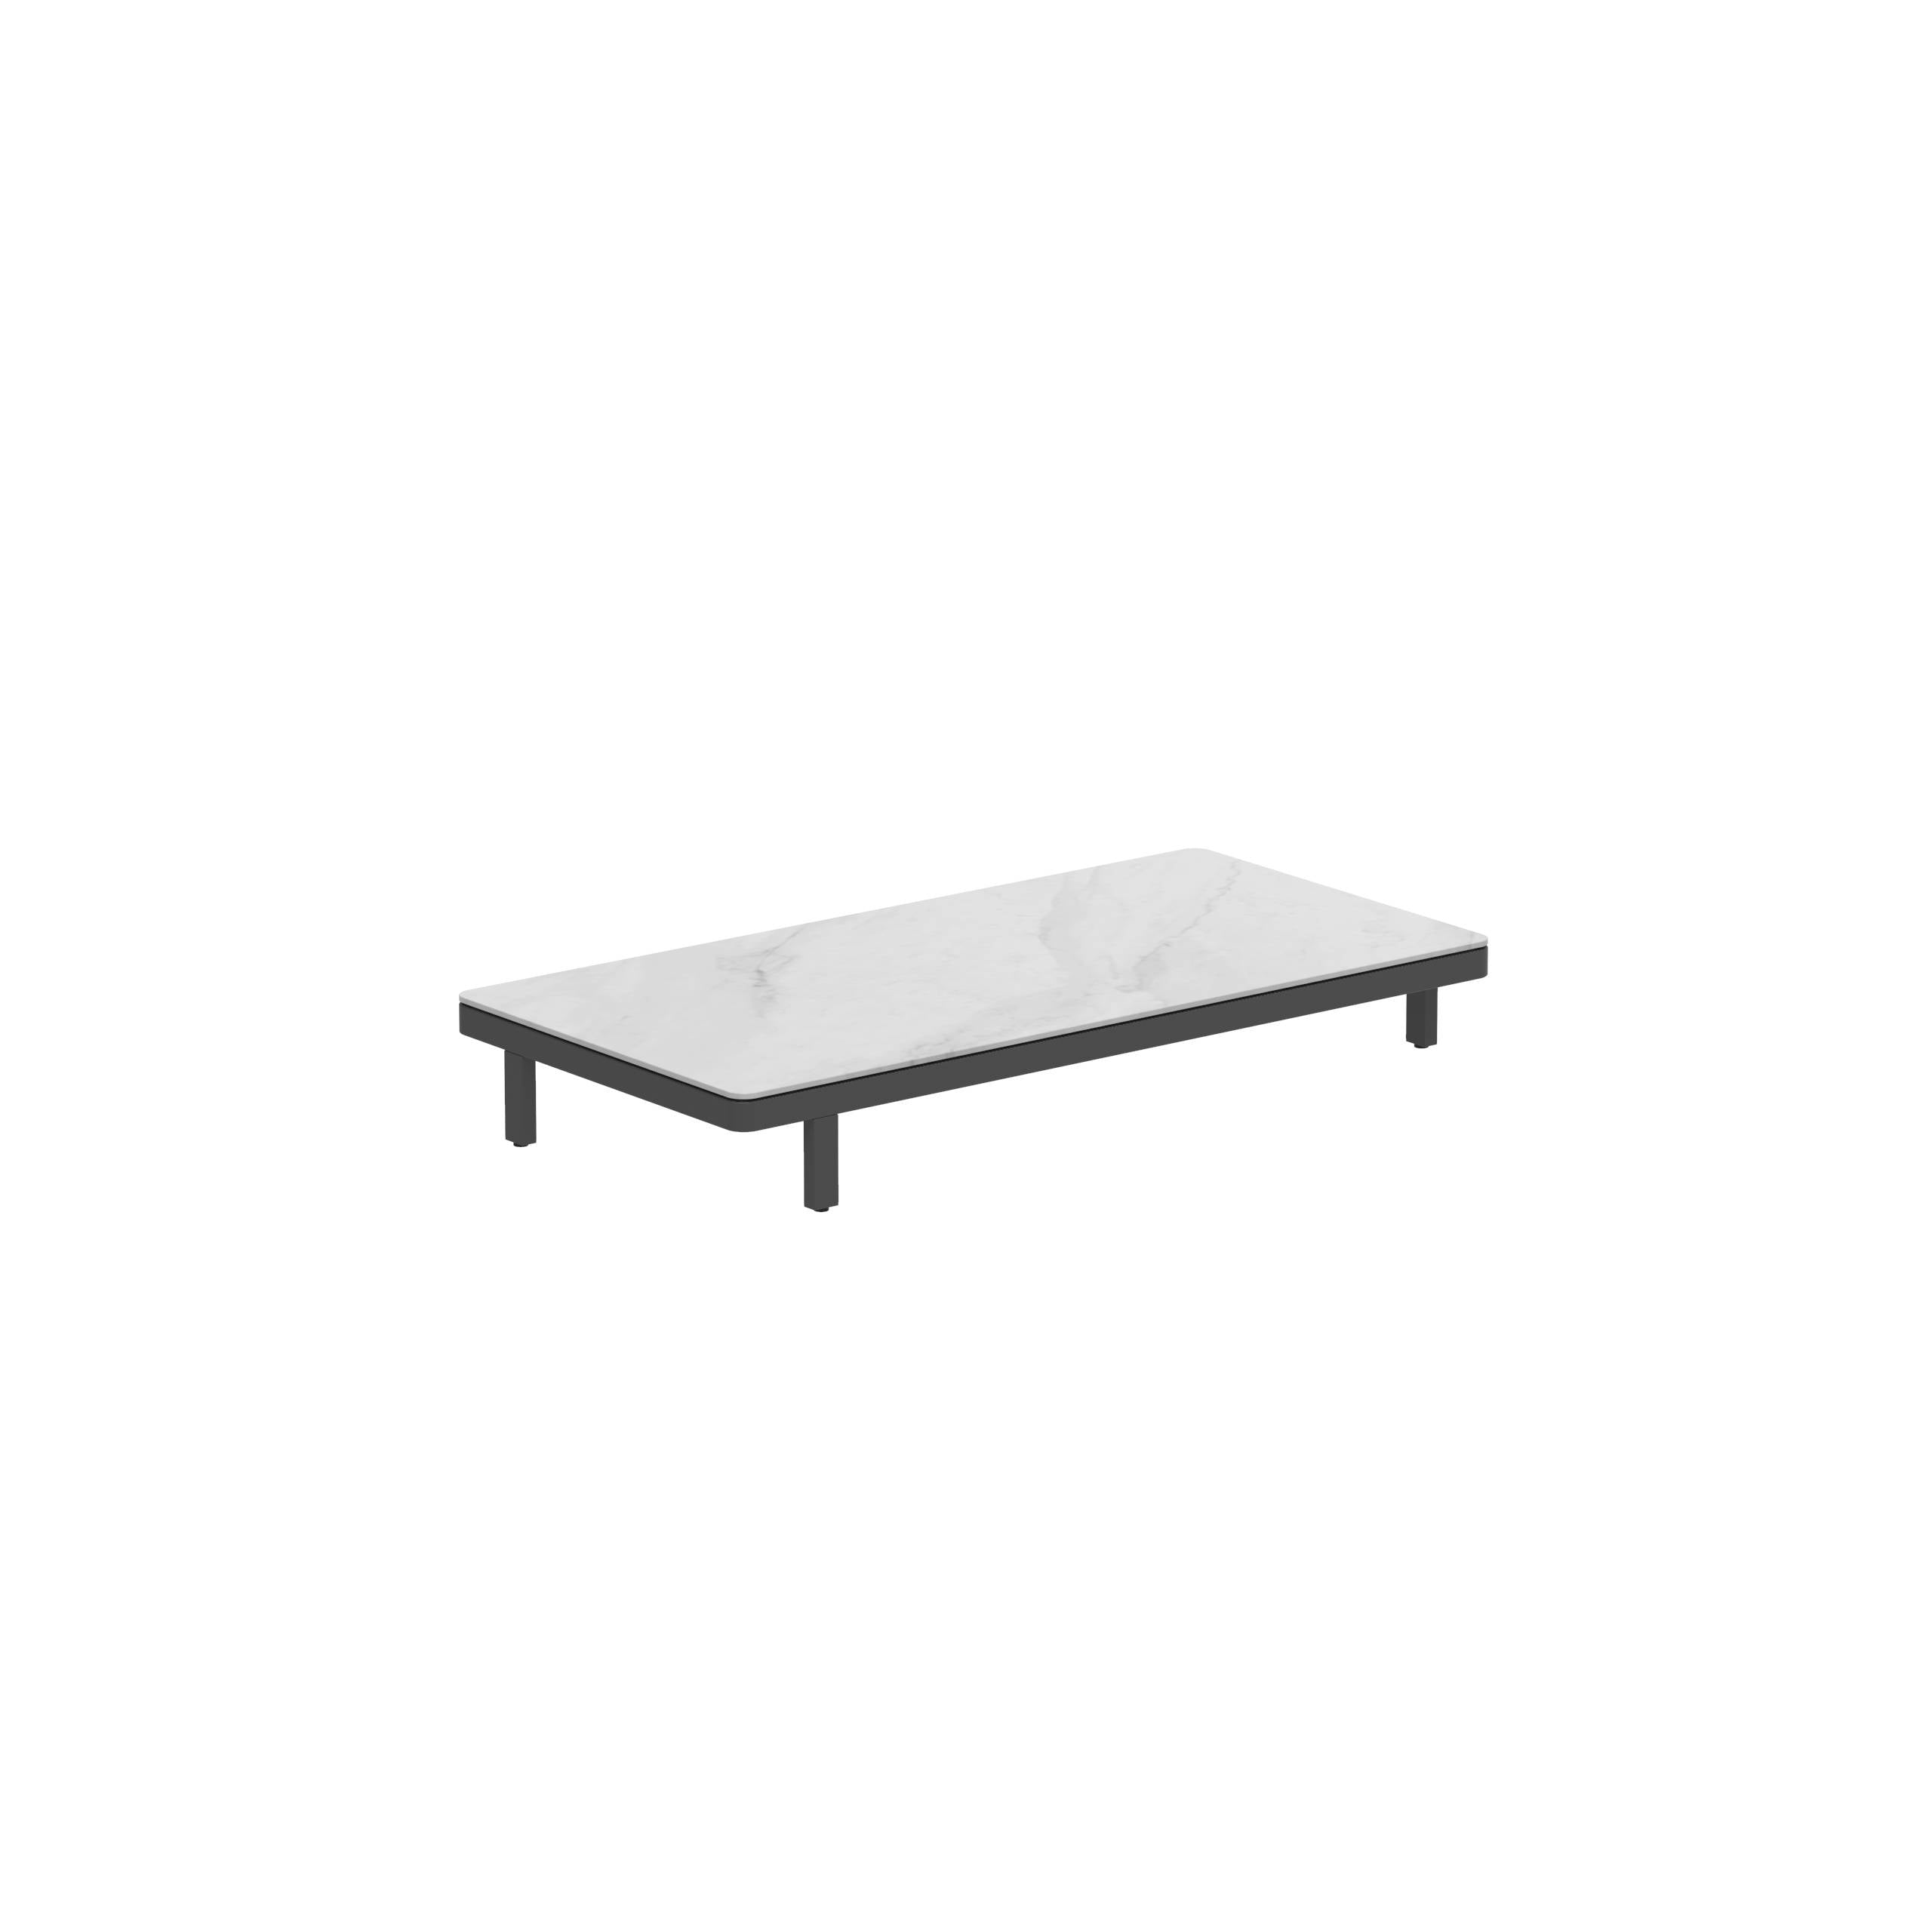 Alura Lounge 160 Ltl Table 160x80x23cm Black Ceramic Tabletop Bianco Statuario